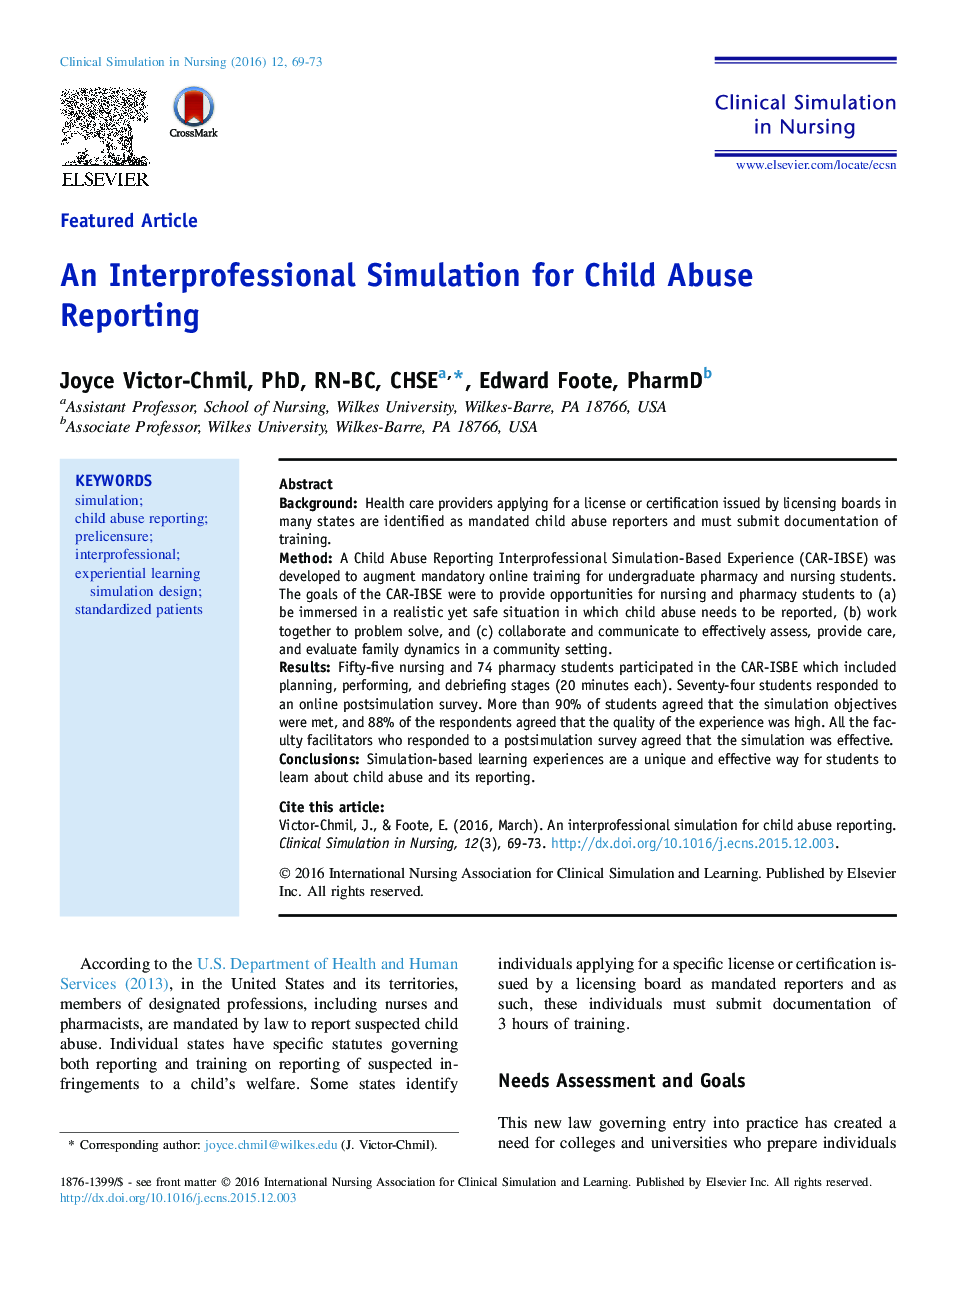 شبیه سازی حرفه ای برای گزارش سوء استفاده از کودکان